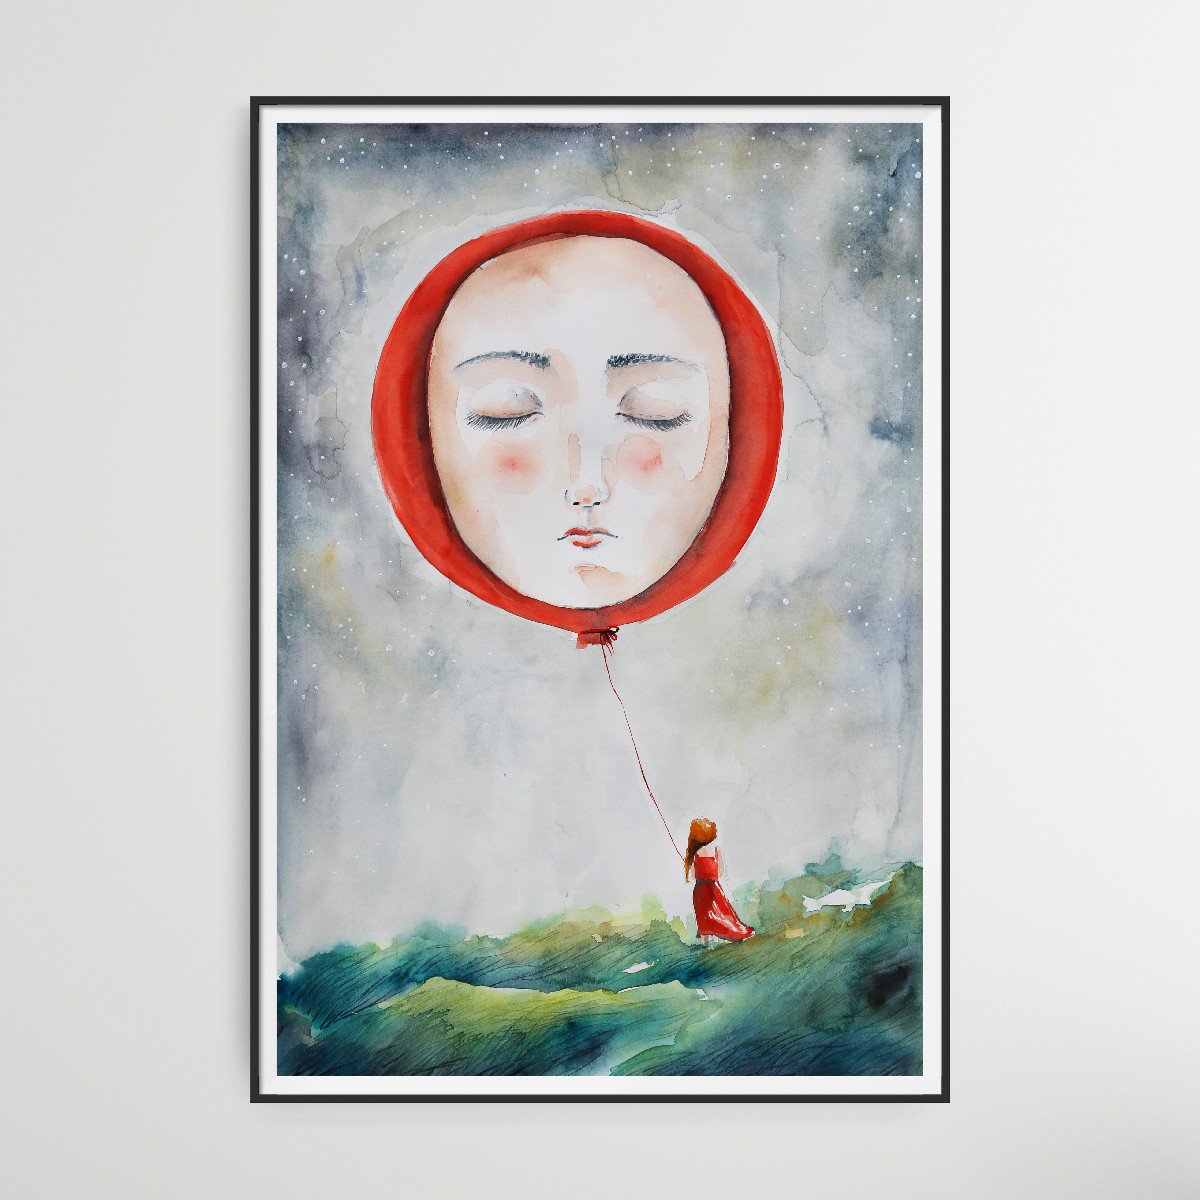 Girl With Red Ballon by Evgenia Smirnova